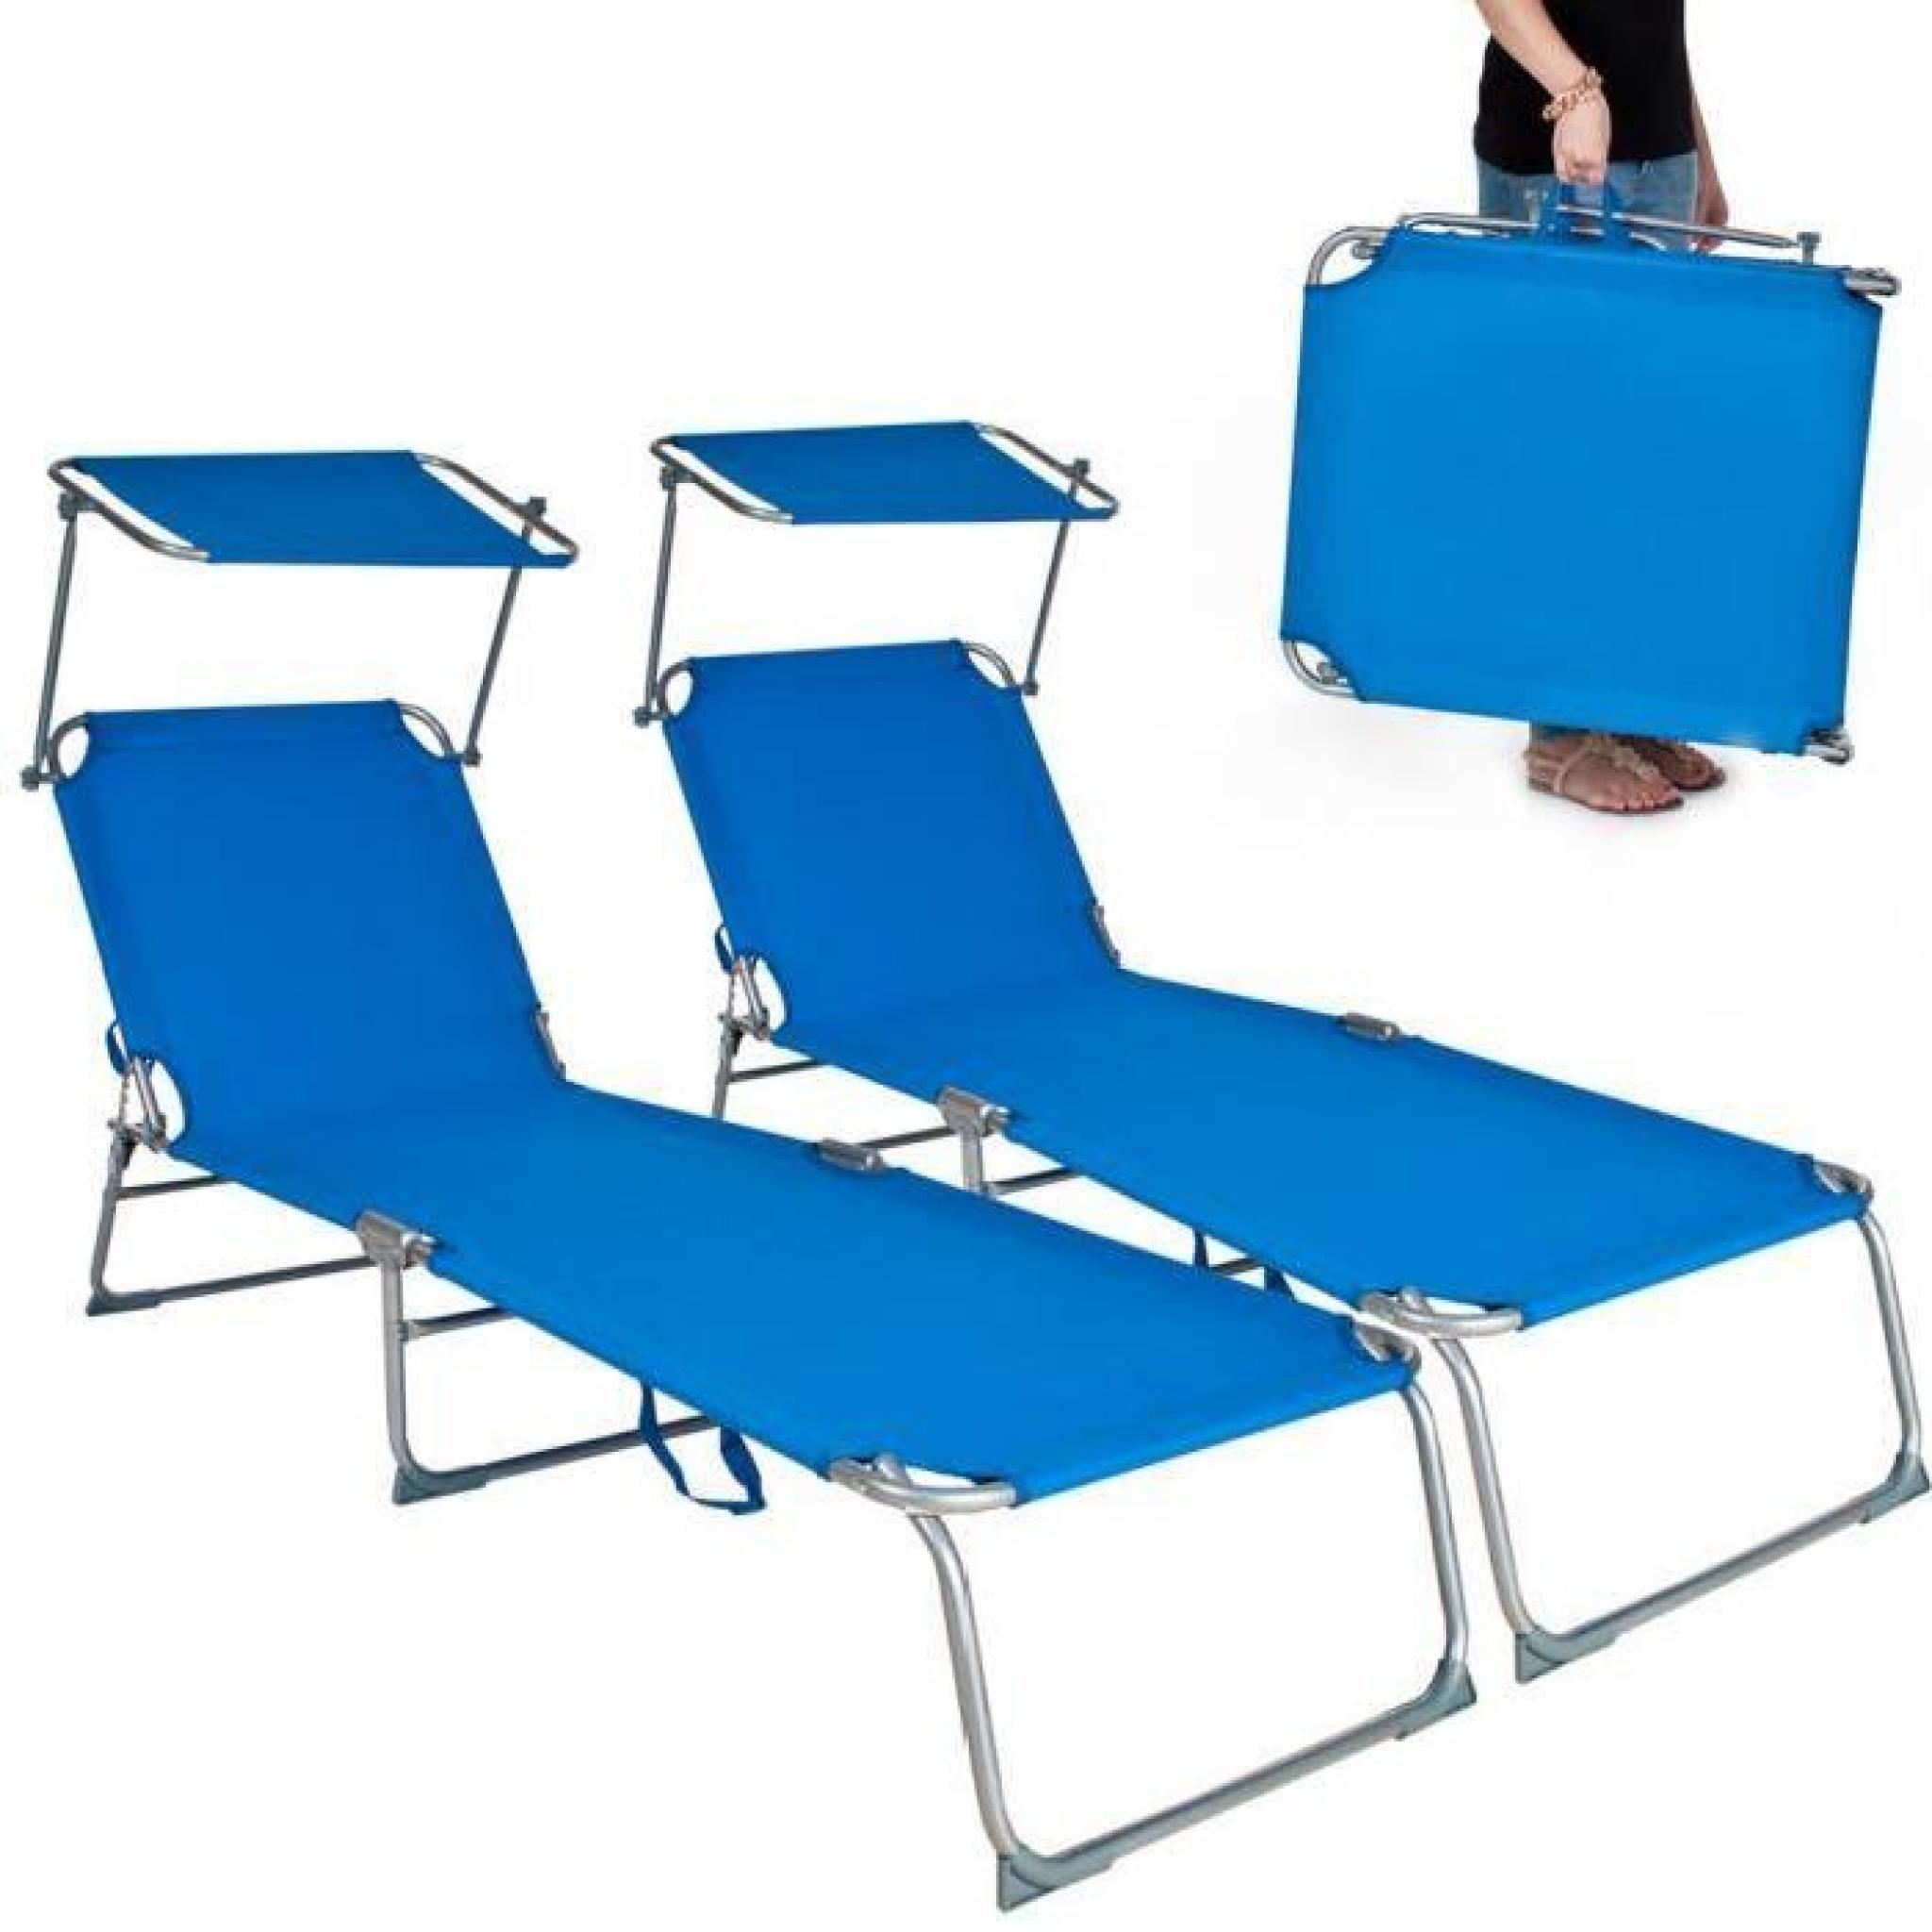 Chaise longue, Transat, Bain de soleil, Pare Soleil, Multi positions, Pliable 190 cm Bleu TECTAKE X 2